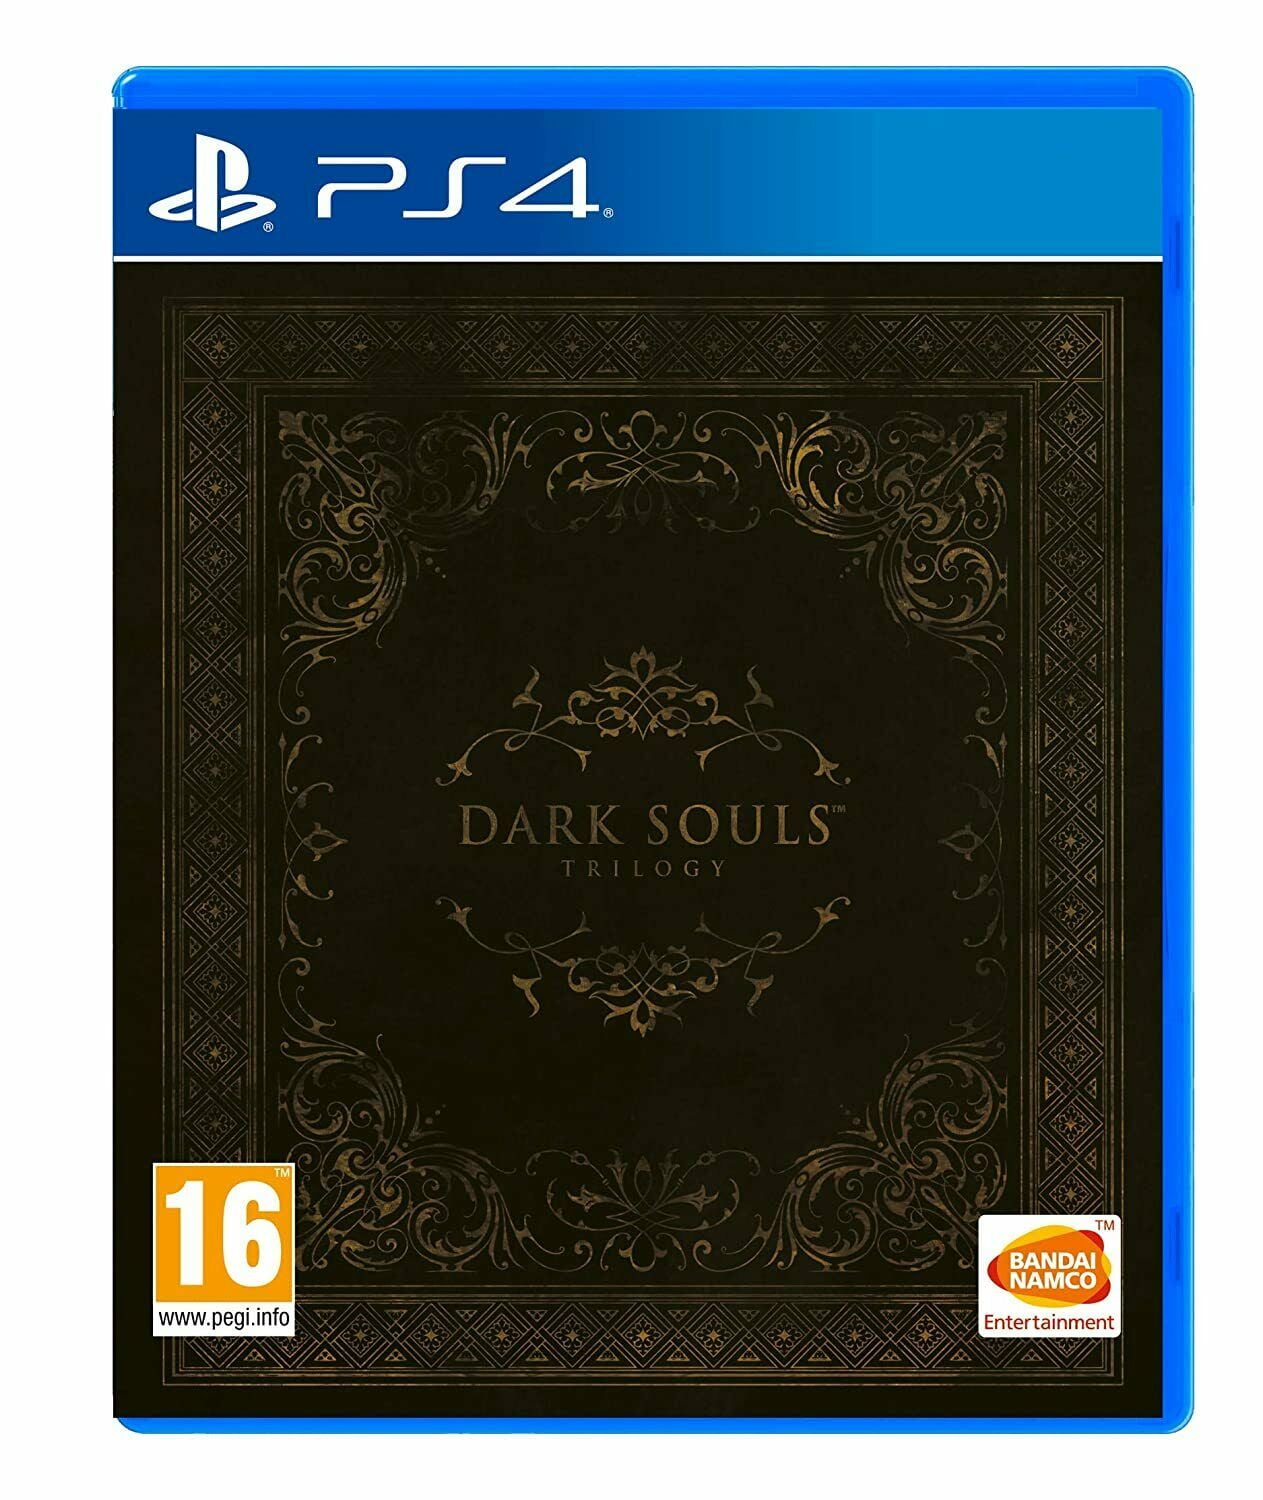 Dark Souls Trilogy PS4 Sony PlayStation 4 Brand New Factory Sealed All DLCs  US - عيادات أبوميزر لطب الأسنان